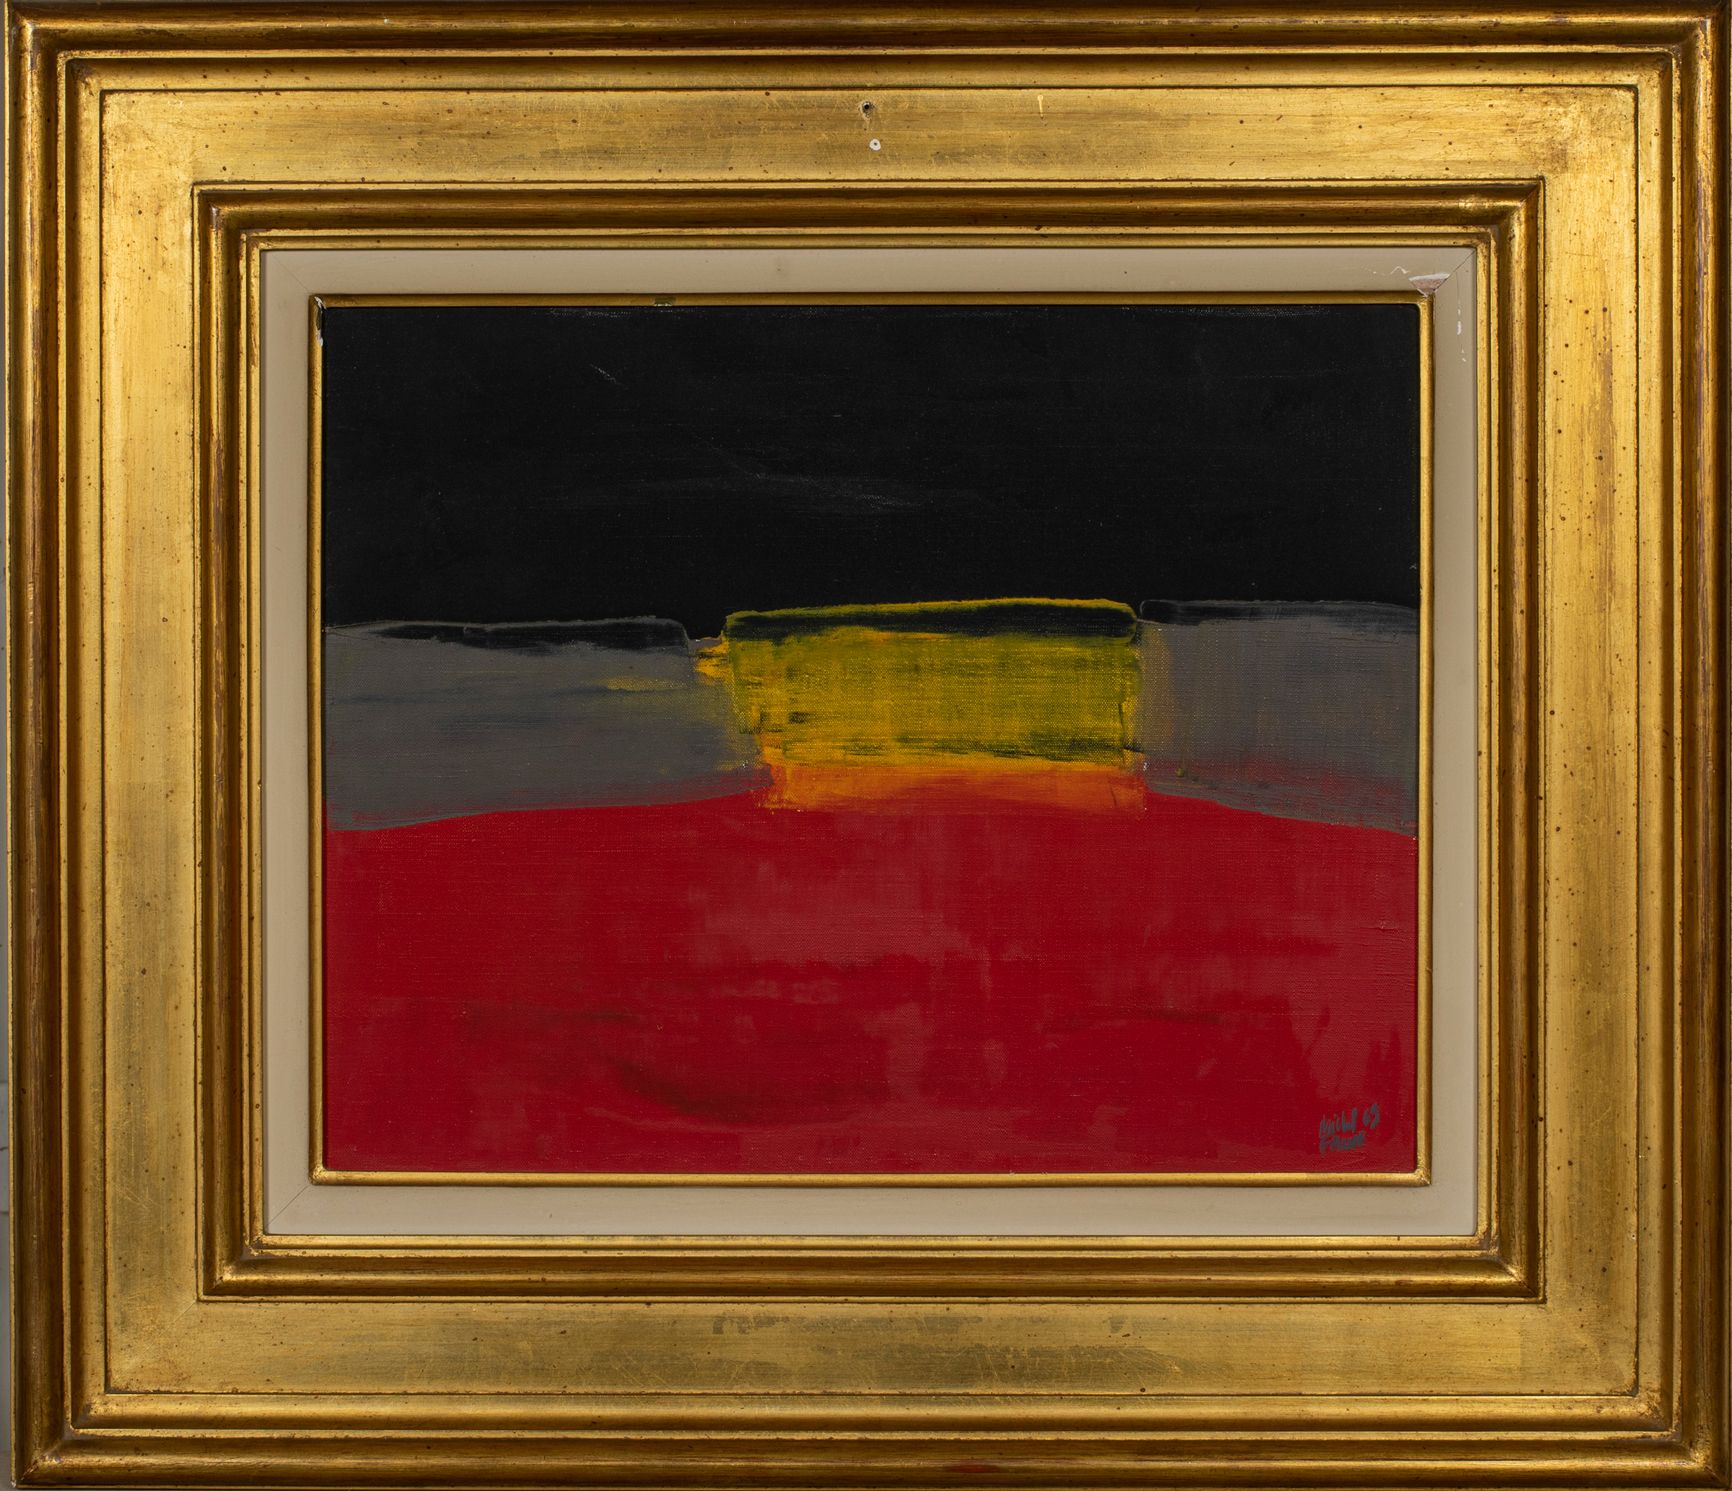 Null 米歇尔-法尔（1928-2009）。

组成，1969年。

布面油画。右下方有签名，日期为1969年。

39 x 41厘米。

有框。